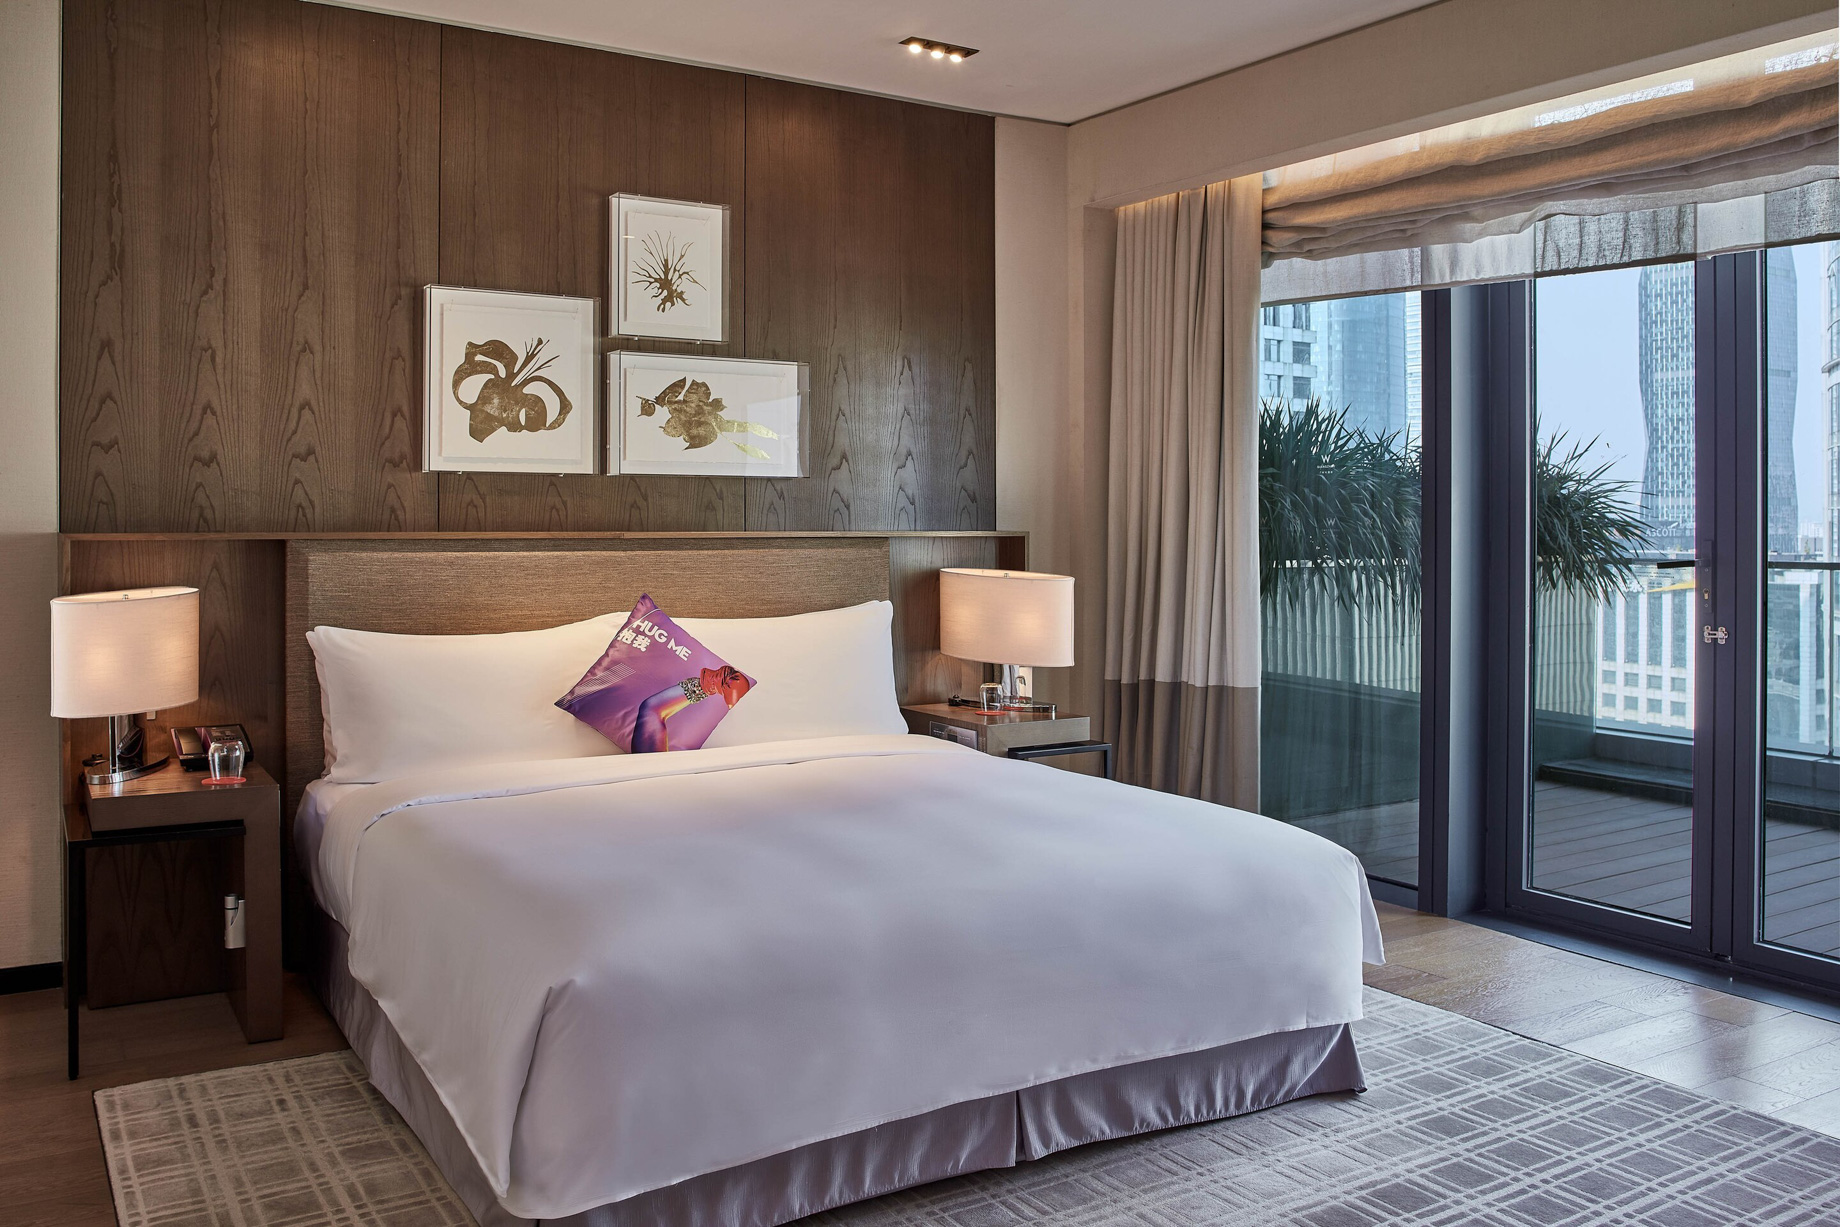 W Guangzhou Hotel – Tianhe District, Guangzhou, China – Marvelous Suite King